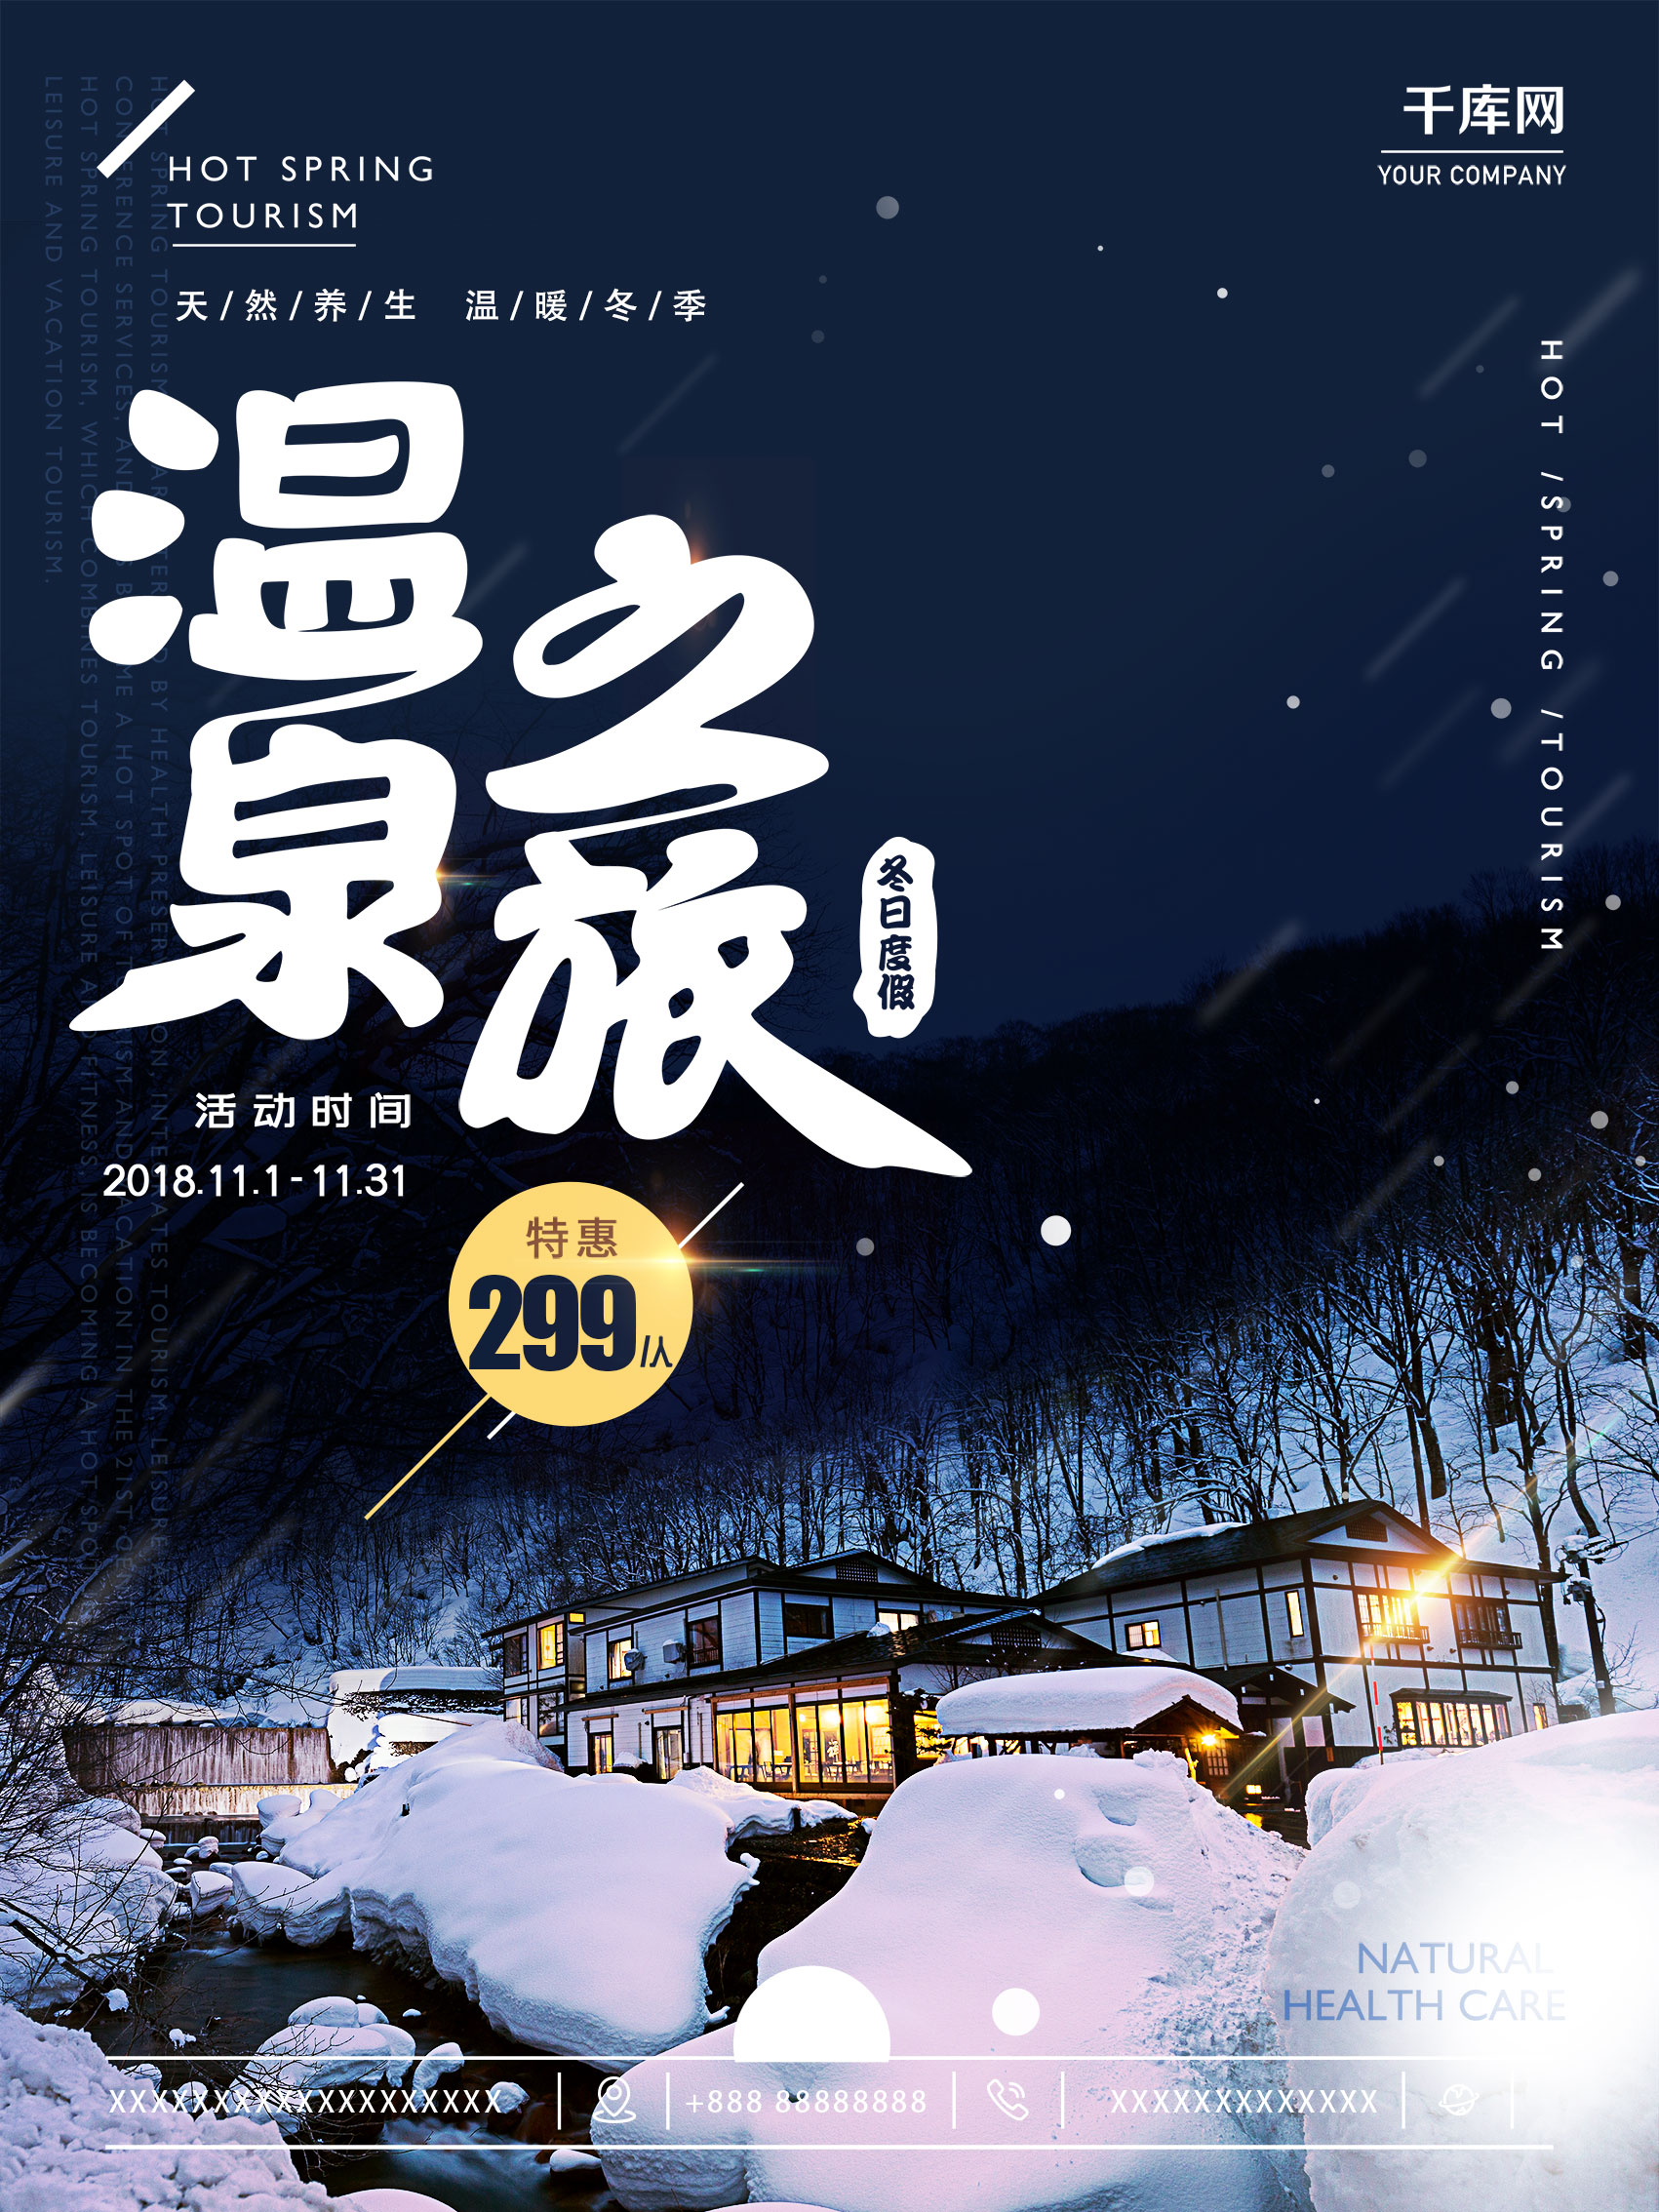 原创冬季温泉旅行酒店养生温泉促销打折海报图片